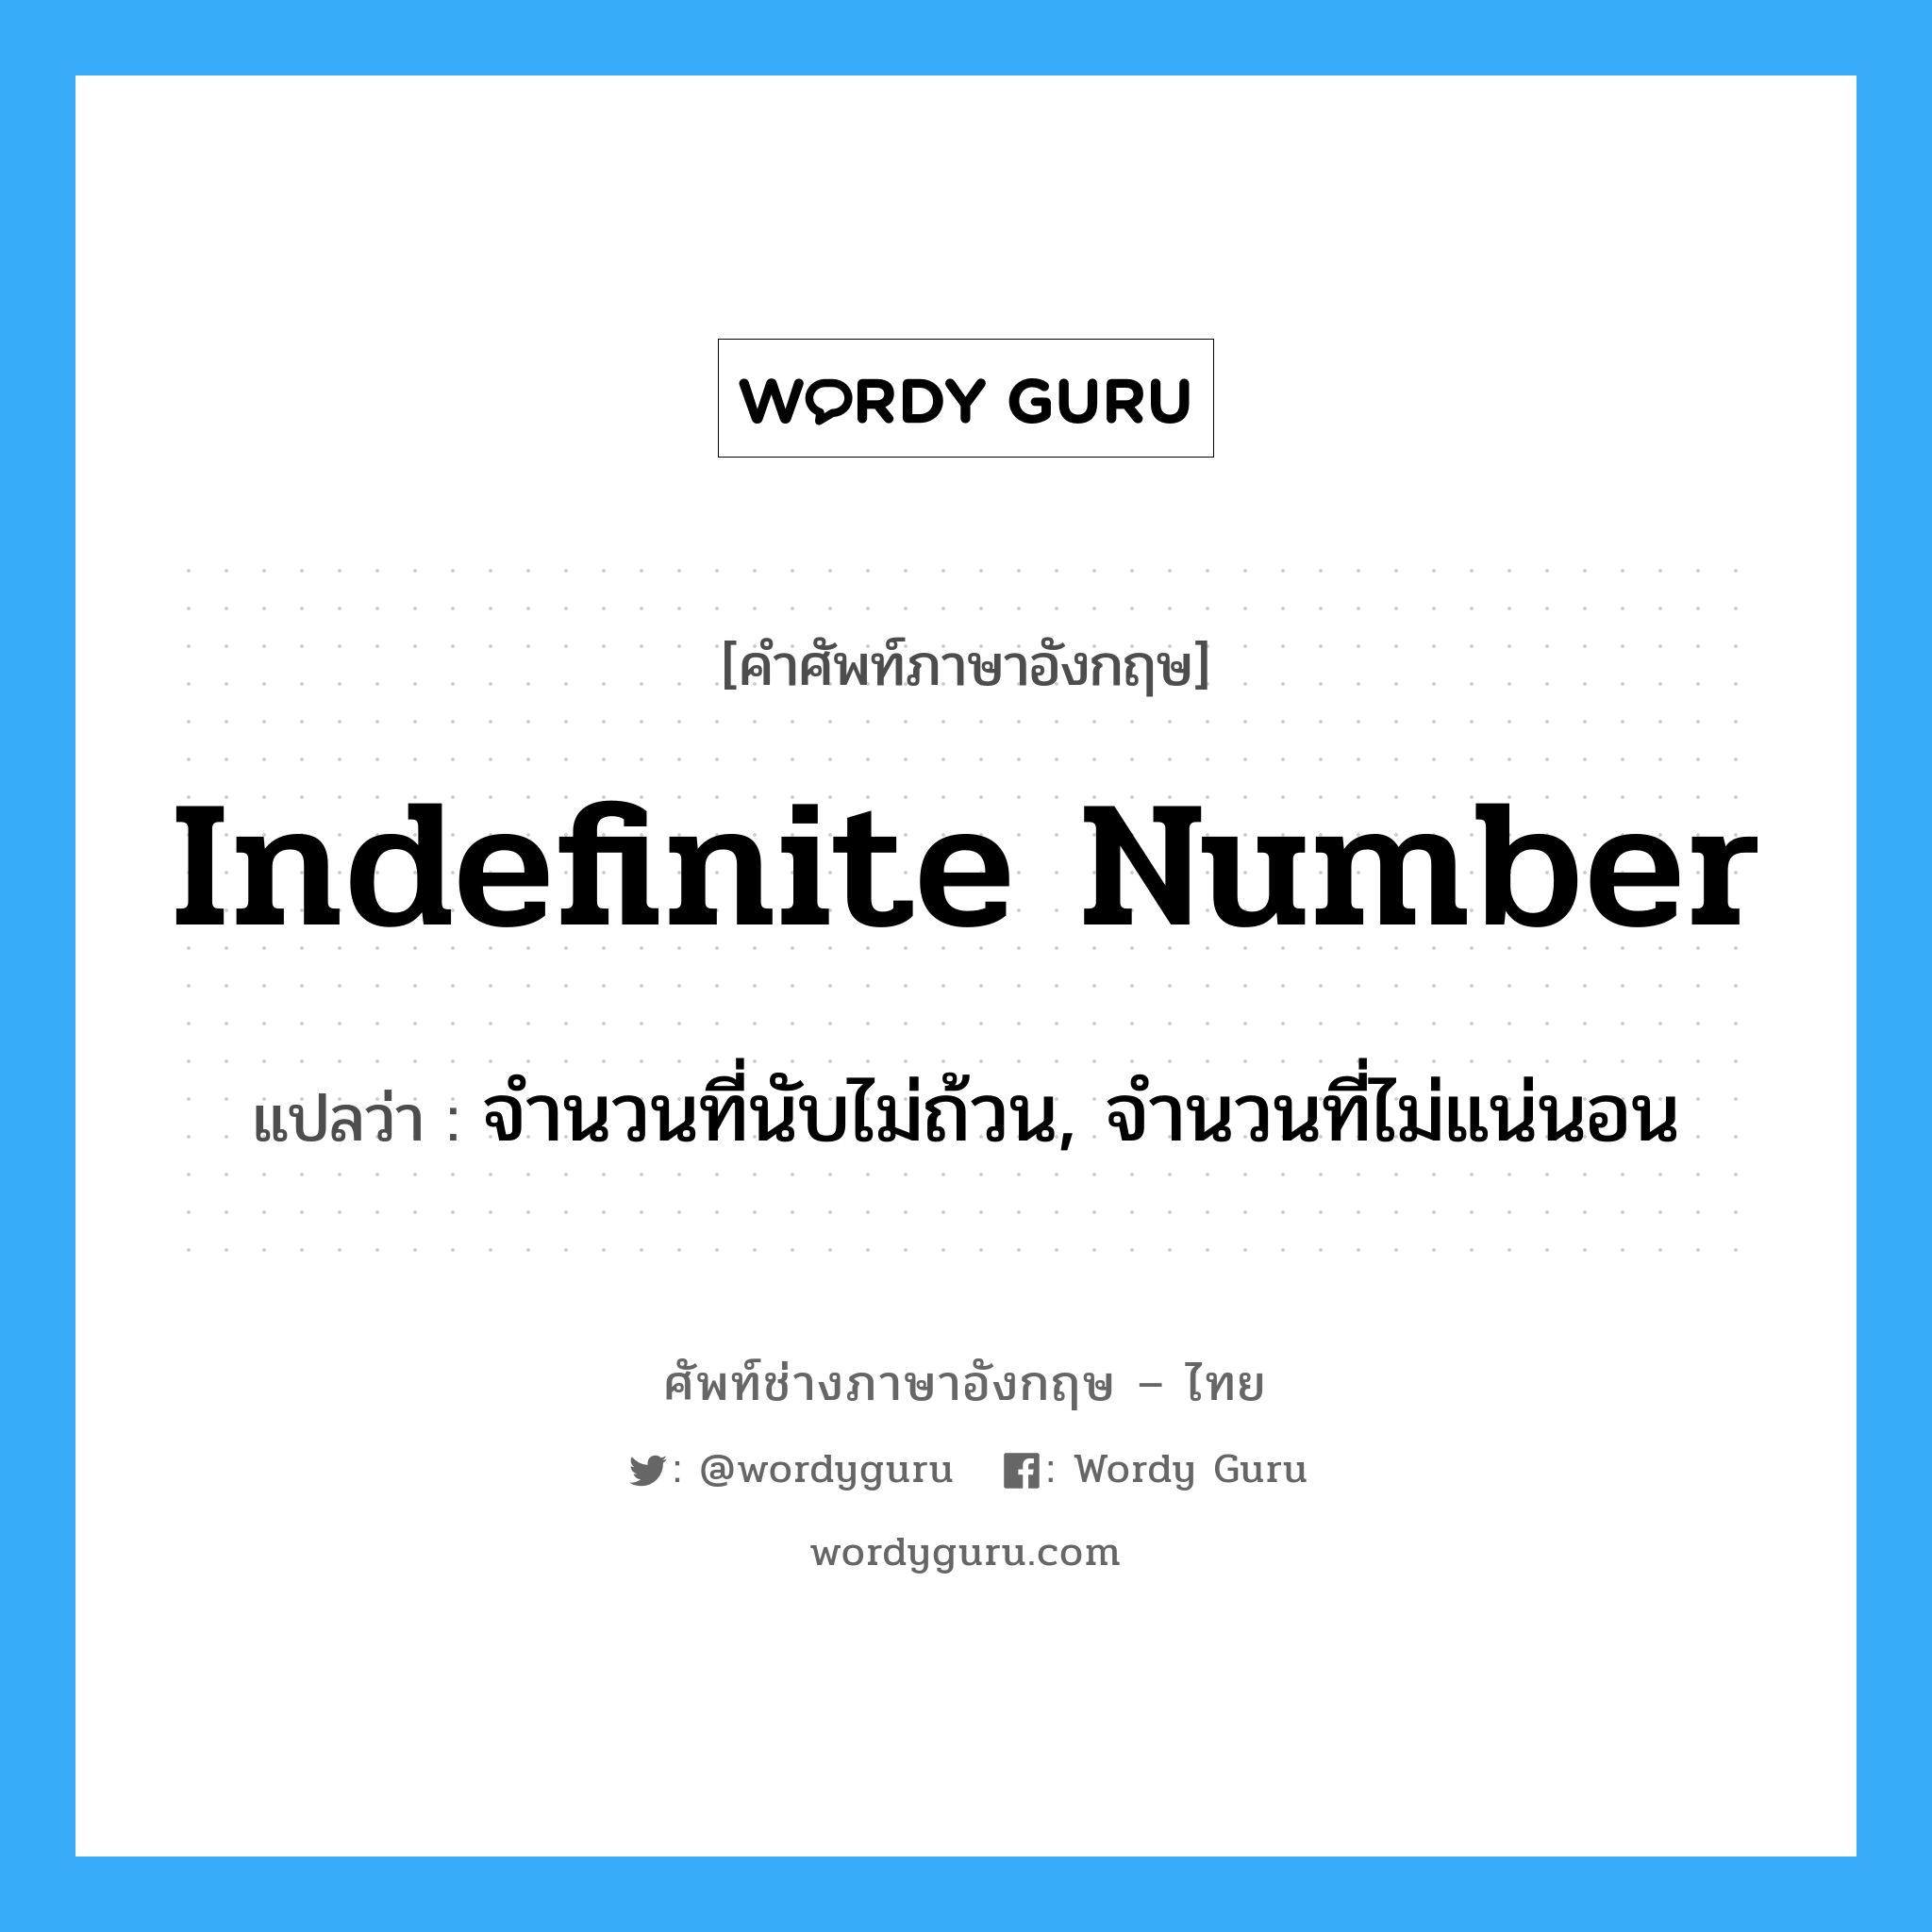 จำนวนที่นับไม่ถ้วน, จำนวนที่ไม่แน่นอน ภาษาอังกฤษ?, คำศัพท์ช่างภาษาอังกฤษ - ไทย จำนวนที่นับไม่ถ้วน, จำนวนที่ไม่แน่นอน คำศัพท์ภาษาอังกฤษ จำนวนที่นับไม่ถ้วน, จำนวนที่ไม่แน่นอน แปลว่า indefinite number